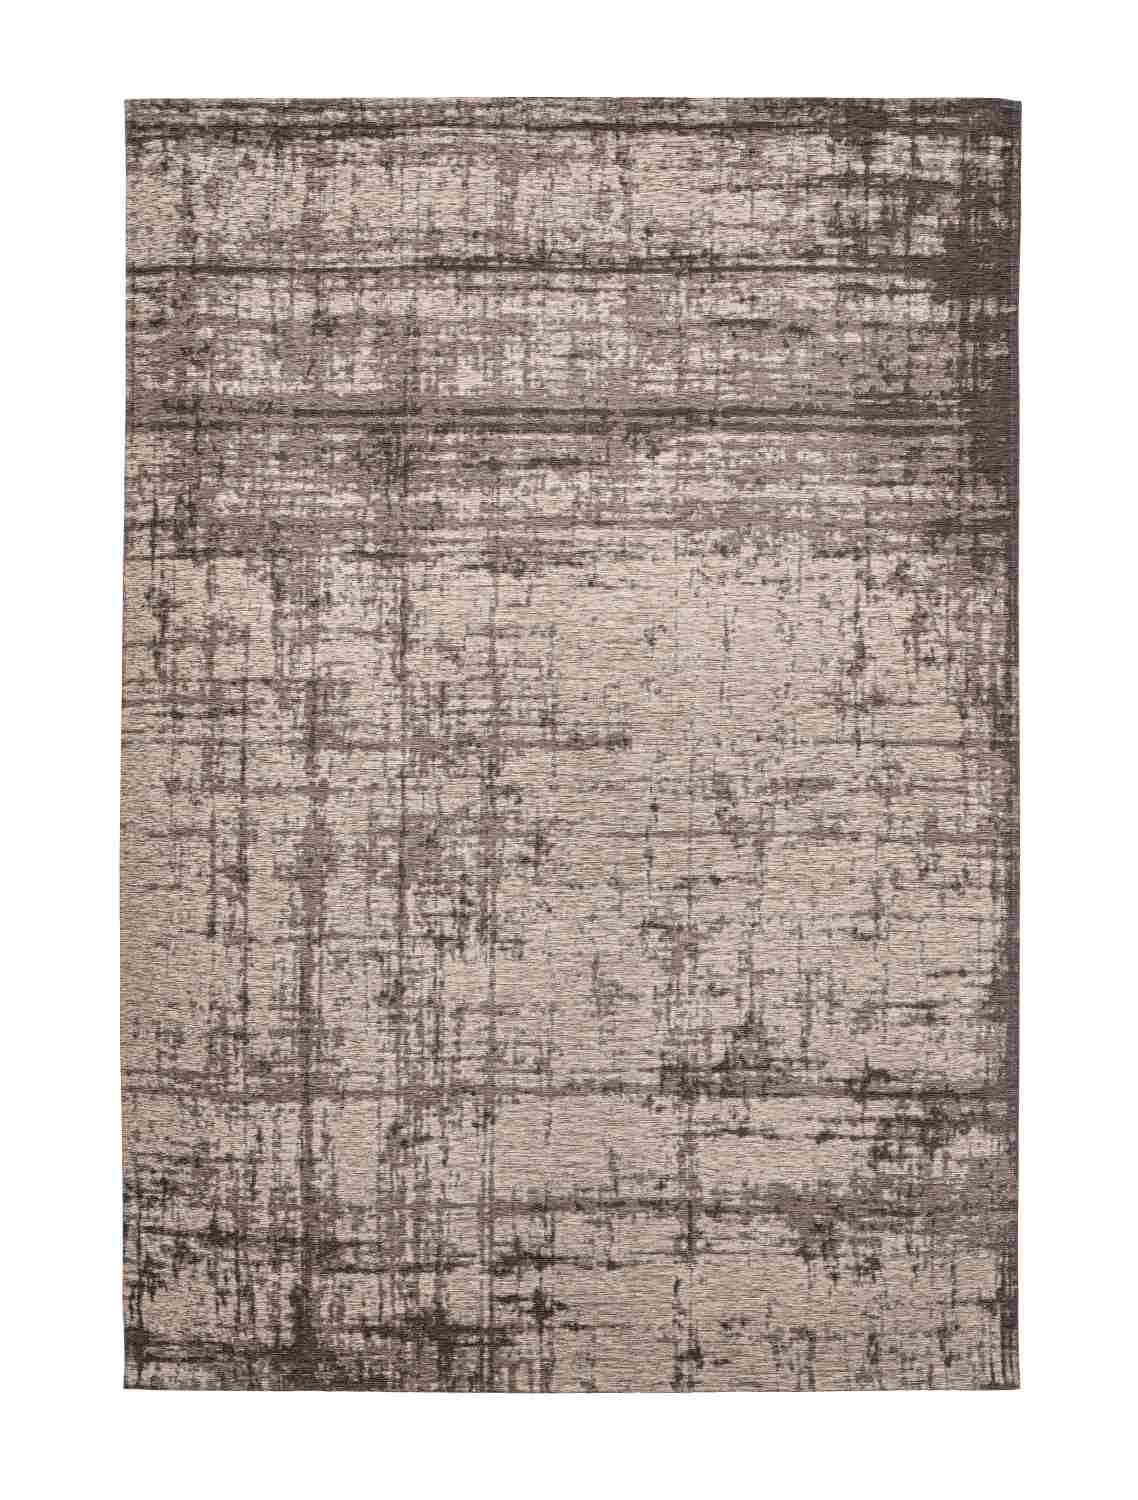 Der Teppich Yuno überzeugt mit seinem modernen Design. Gefertigt wurde die Vorderseite aus 50% Chenille, 30% Polyester und 20% Baumwolle, die Rückseite ist aus Latex. Der Teppich besitzt eine Taupe Farbton und die Maße von 155x230 cm.